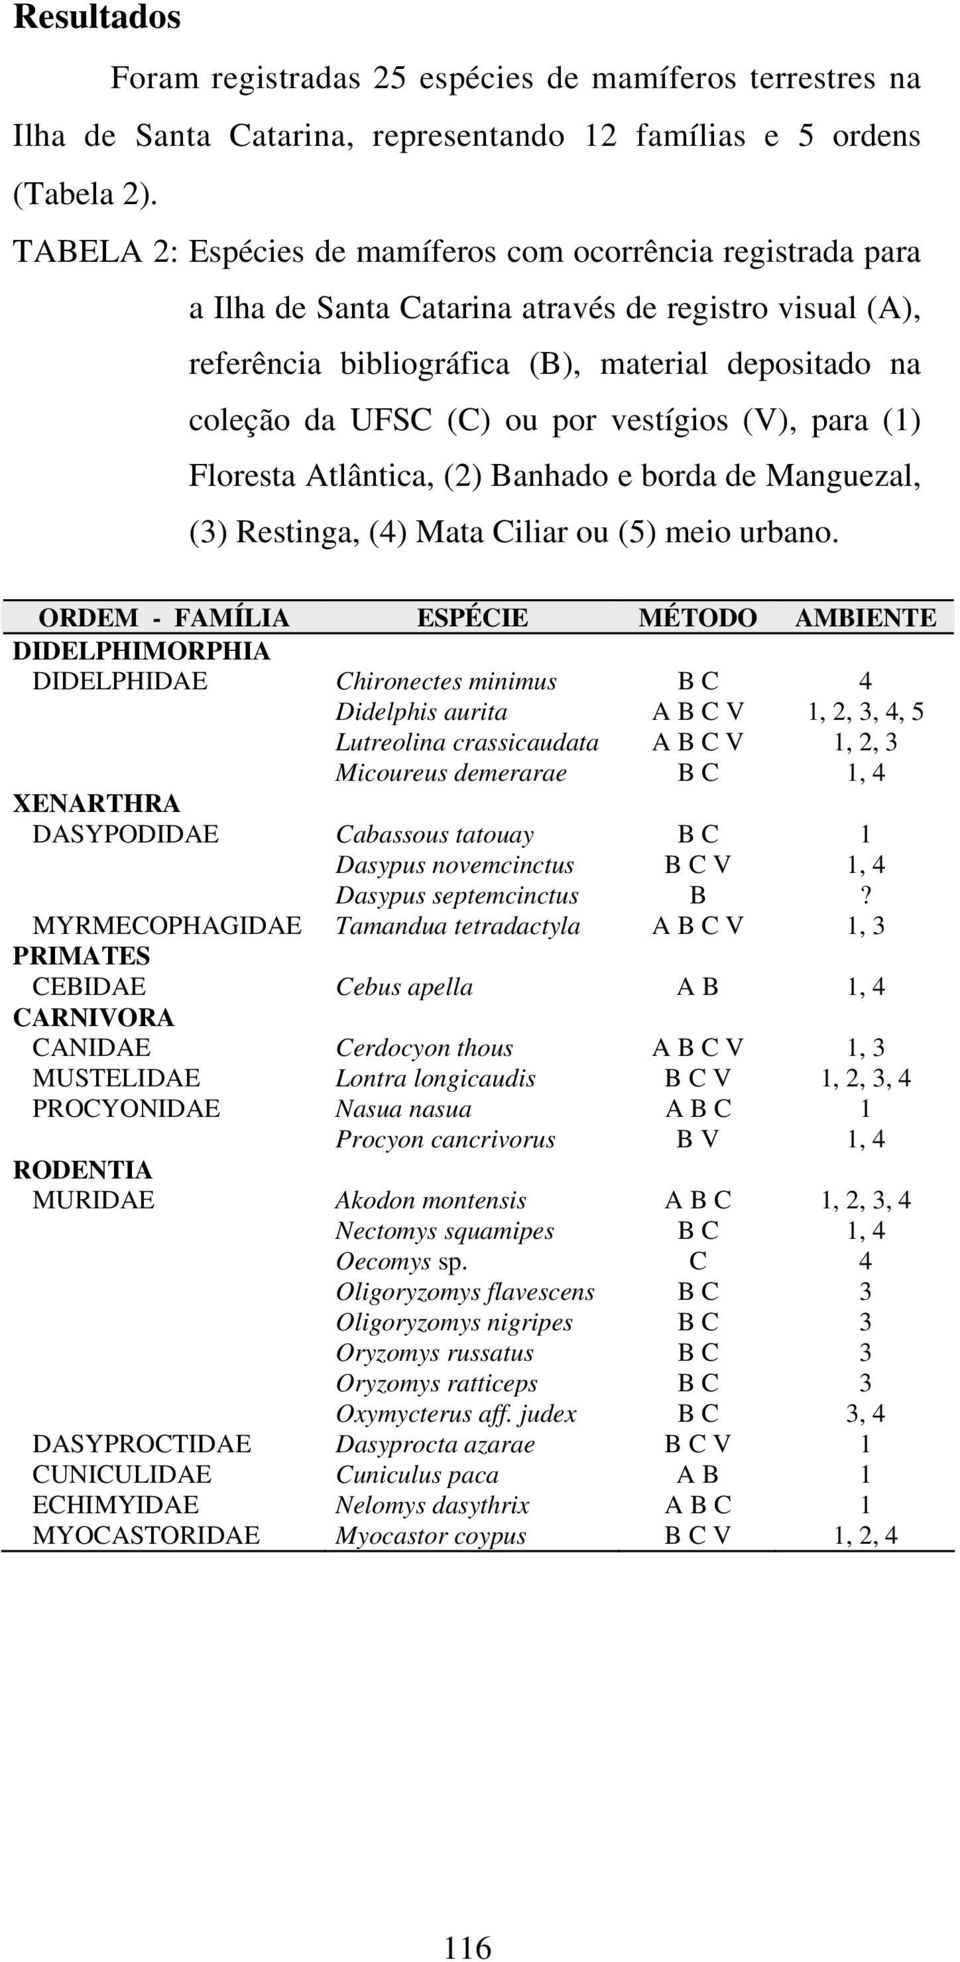 vestígios (V), para (1) Floresta Atlântica, (2) Banhado e borda de Manguezal, (3) Restinga, (4) Mata Ciliar ou (5) meio urbano.